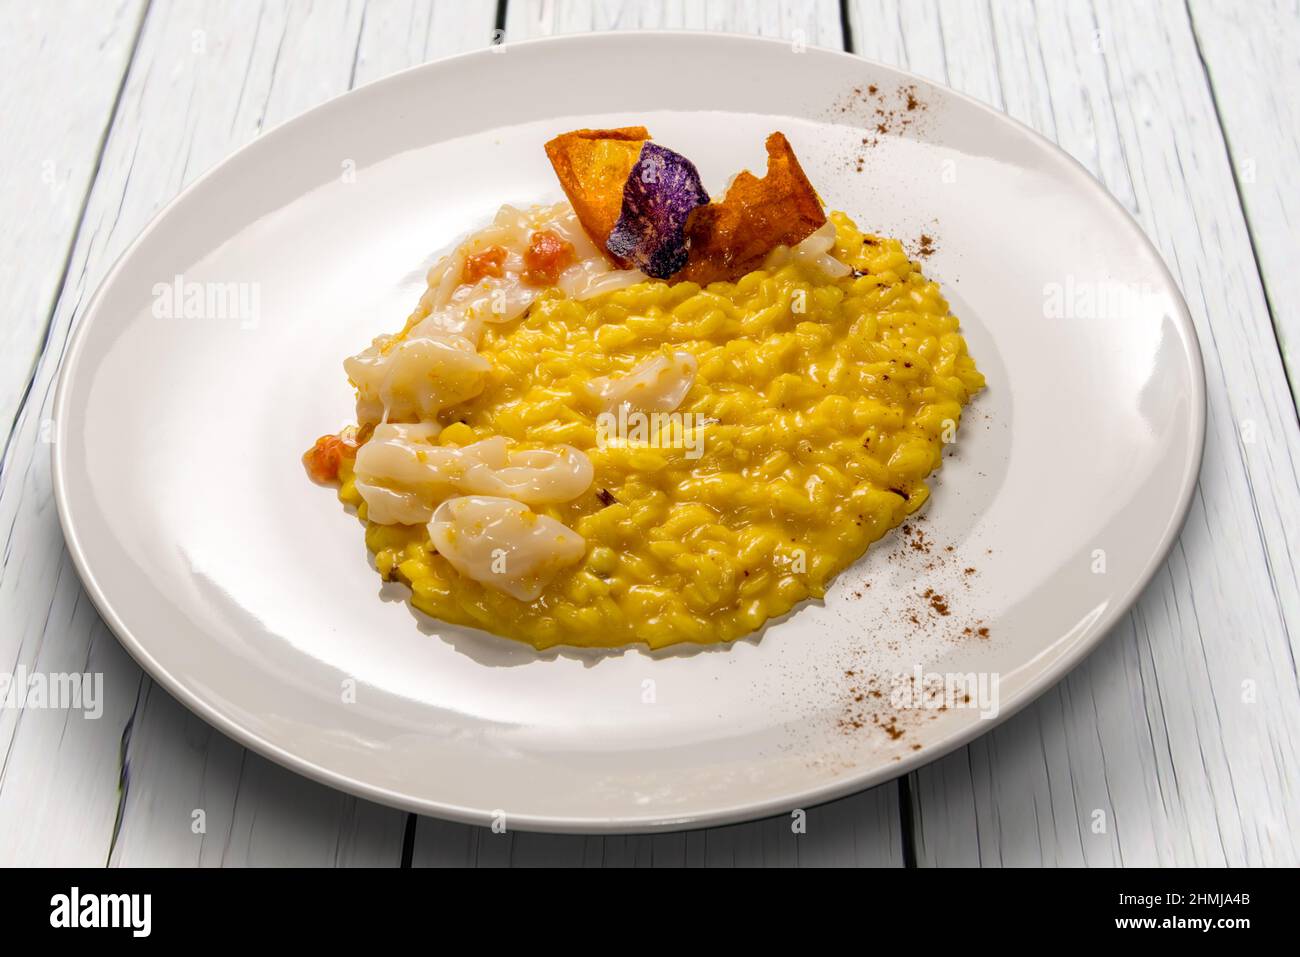 Risotto au safran jaune avec seiches et pulpe de tomate fraîche, recette gastronomique dans un plat blanc sur une table en bois blanc Banque D'Images